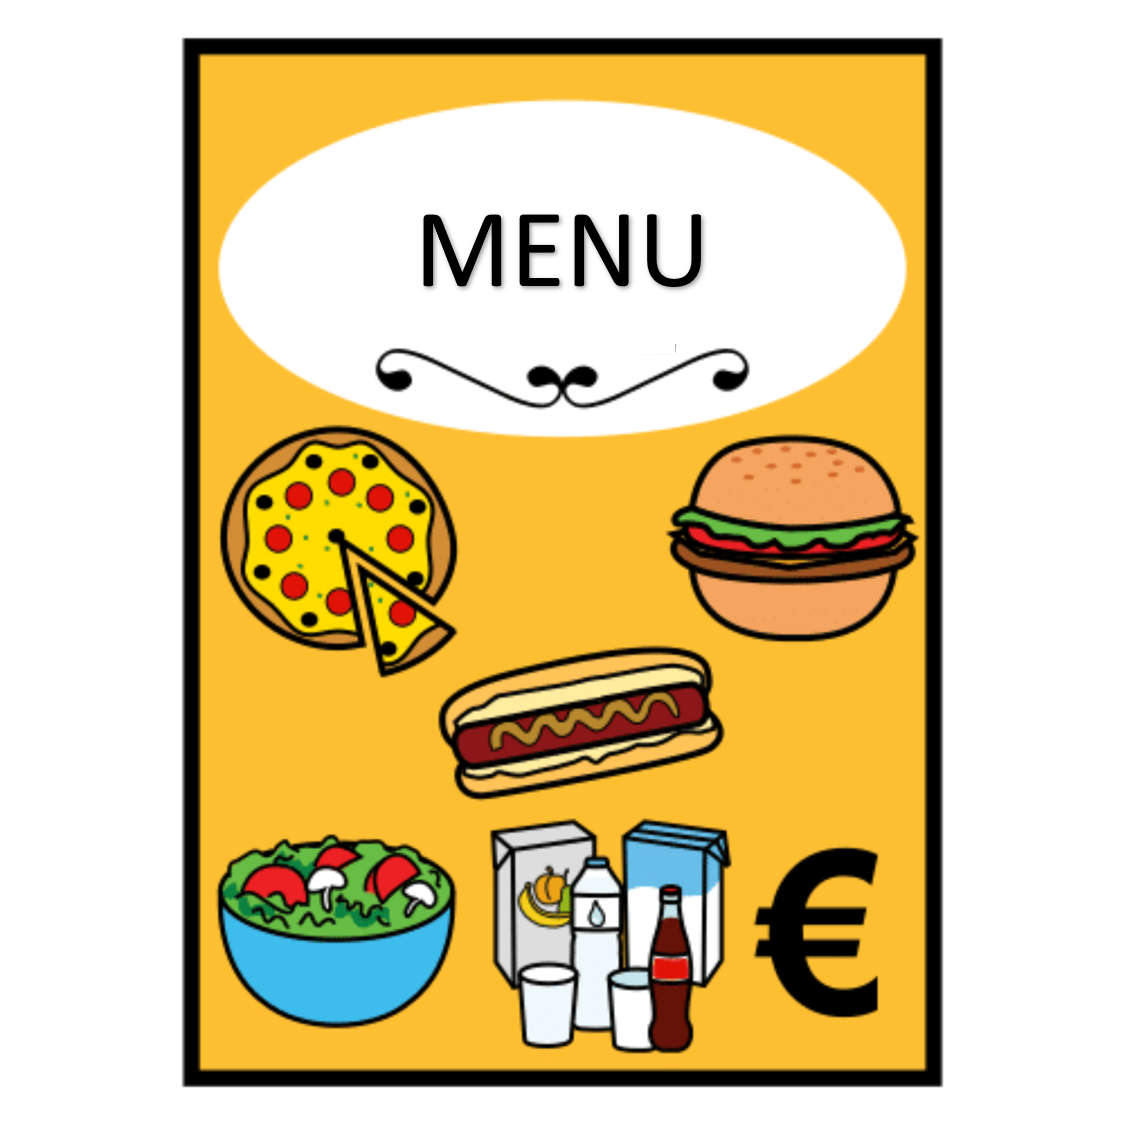 En la imagen aparece el menú de un restaurante, en el que se pueden ver imágenes de distintos platos: una pizza, una hamburguesa, un perrito caliente, una ensalada y varias bebidas